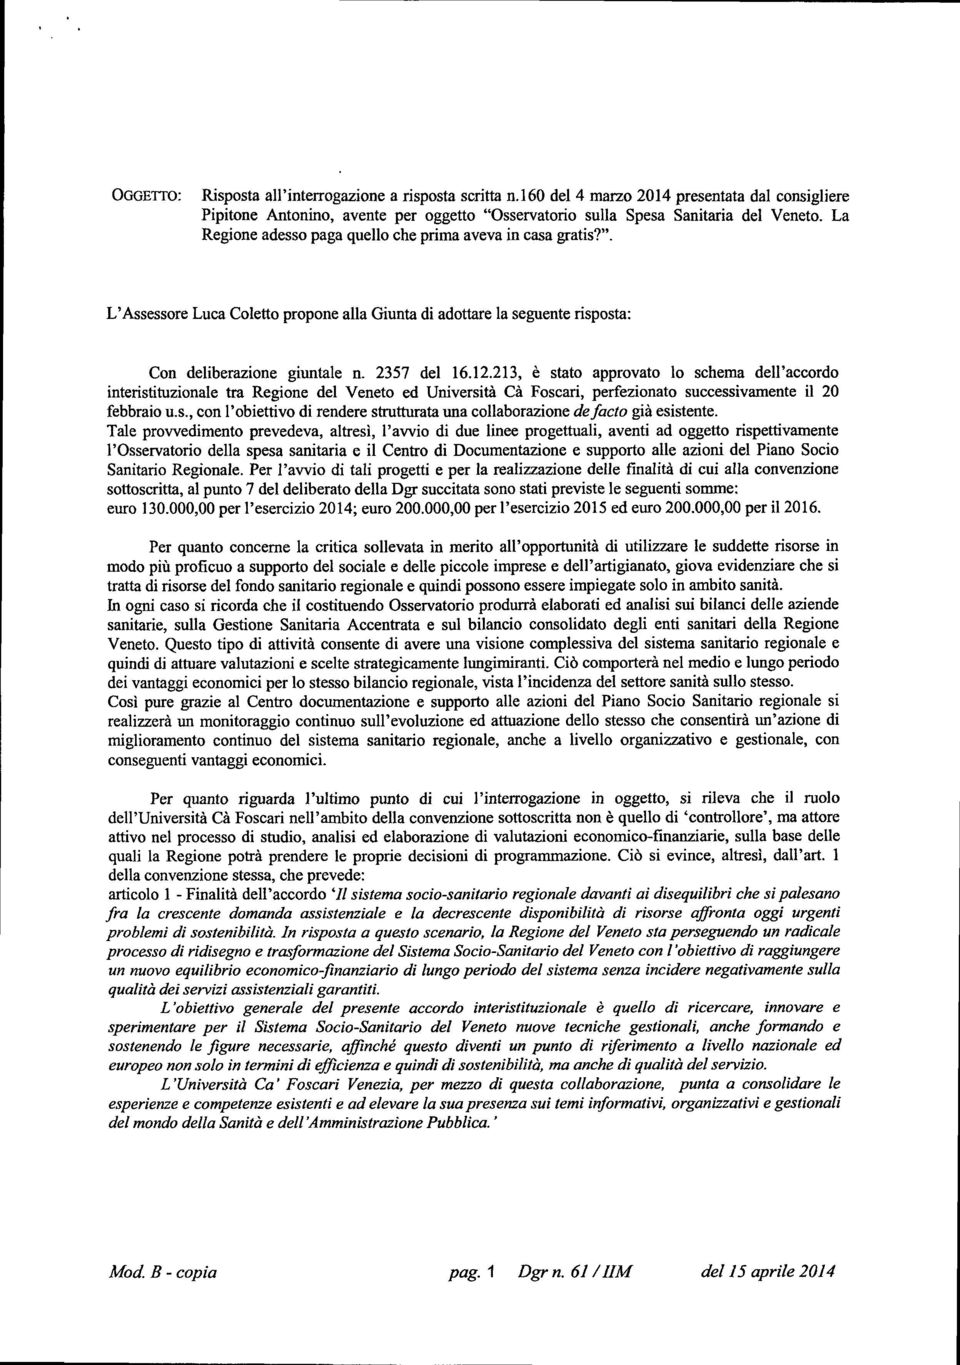 213, è stato approvato lo schema dell'accordo interistituzionale tra Regione del Veneto ed Università Cà Foscari, perfezionato successivamente il 20 febbraio u.s., con l'obiettivo di rendere strutturata una collaborazione de facto già esistente.